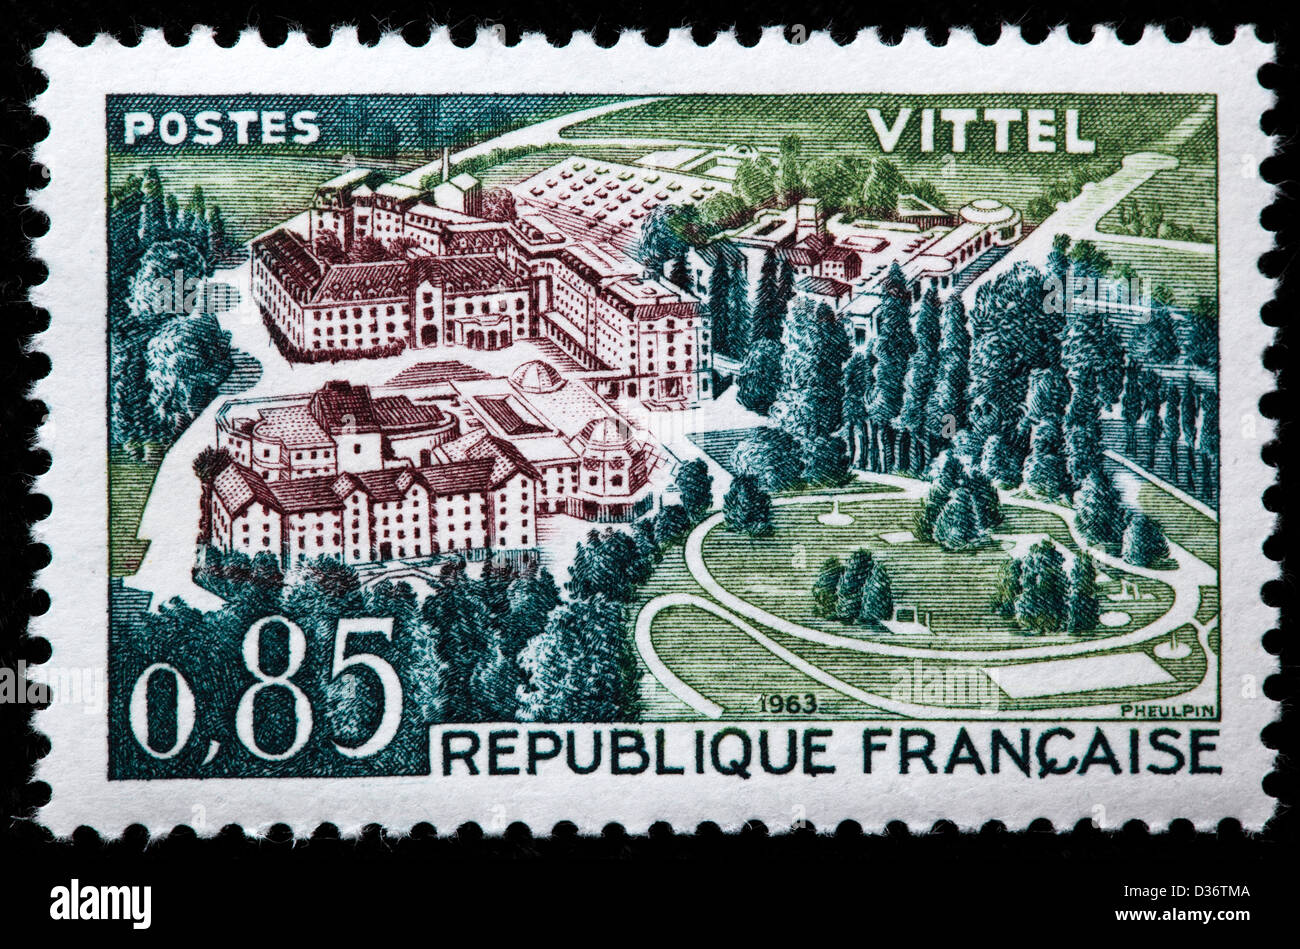 Vittel, Lorraine, timbre-poste, France, 1963 Banque D'Images